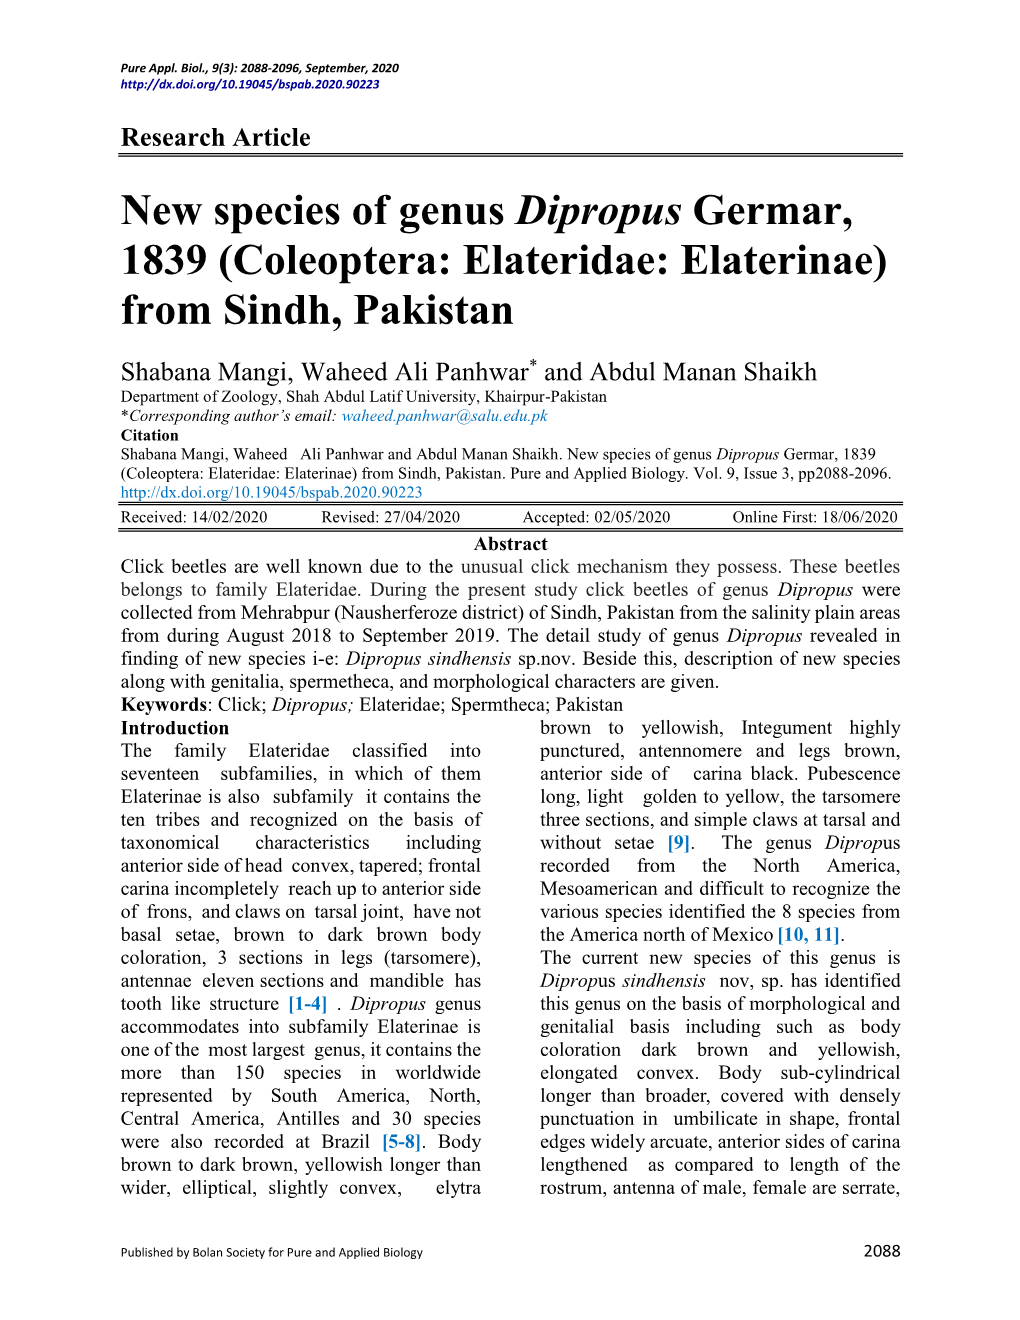 New Species of Genus Dipropus Germar, 1839 (Coleoptera: Elateridae: Elaterinae) from Sindh, Pakistan